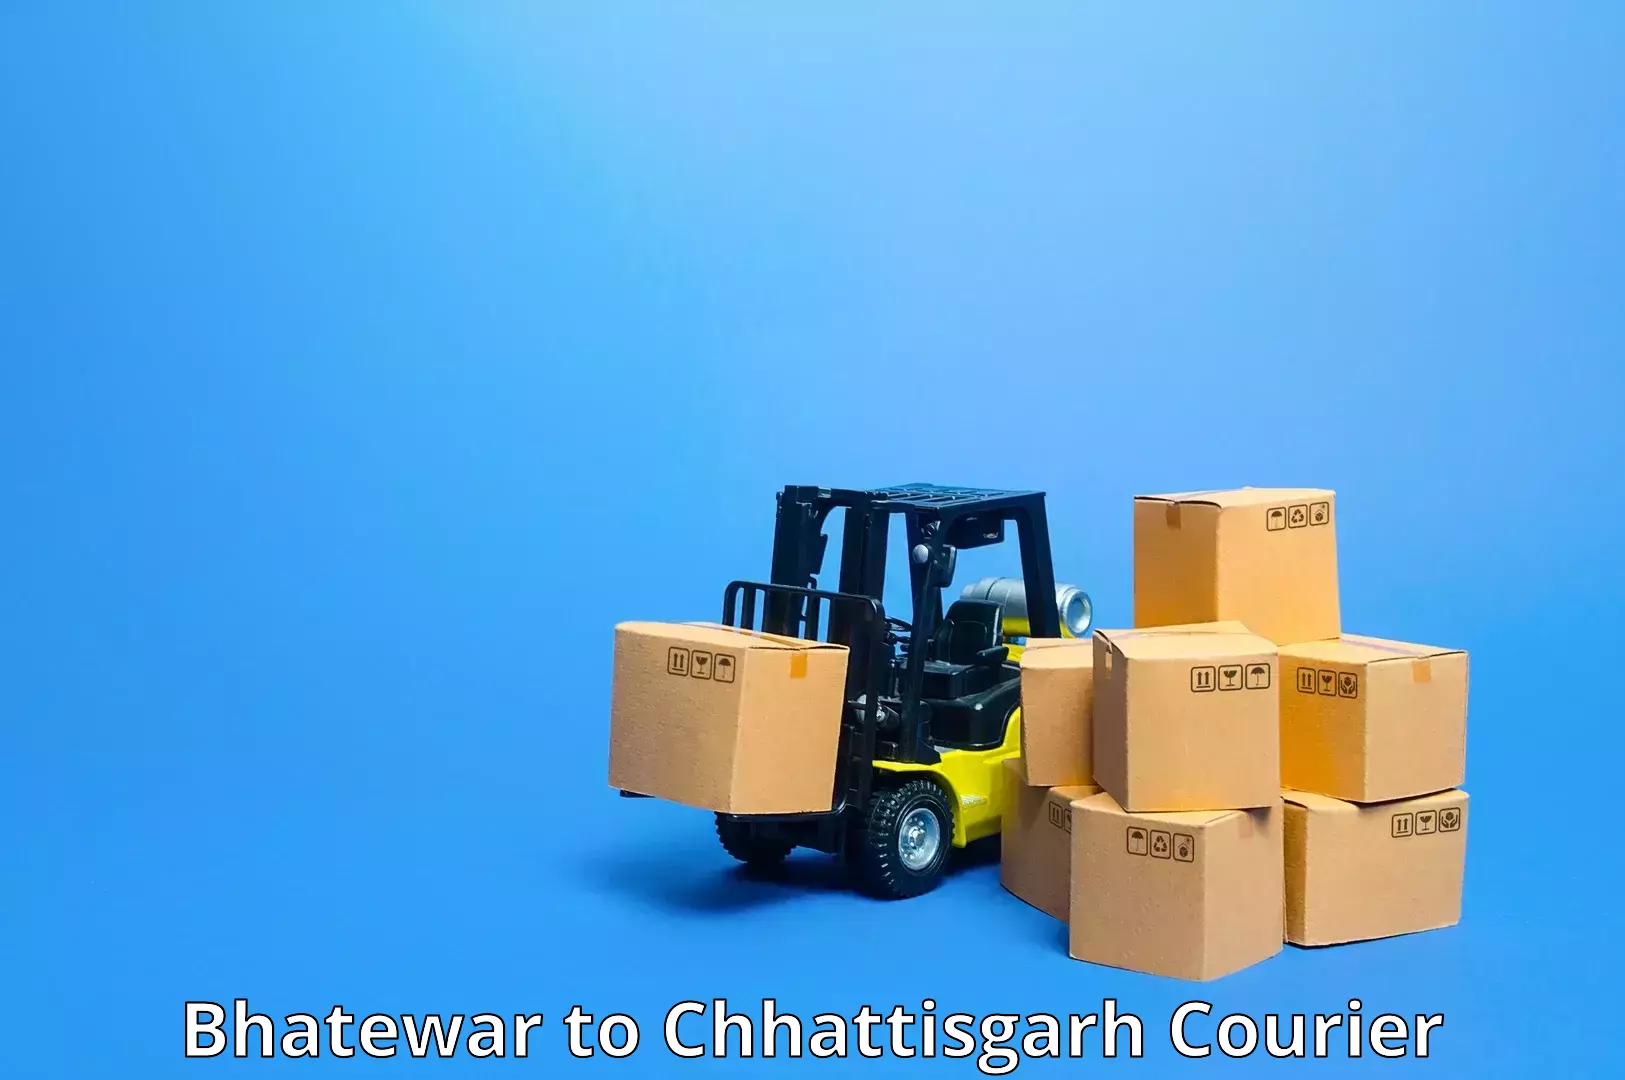 High-speed parcel service Bhatewar to Raigarh